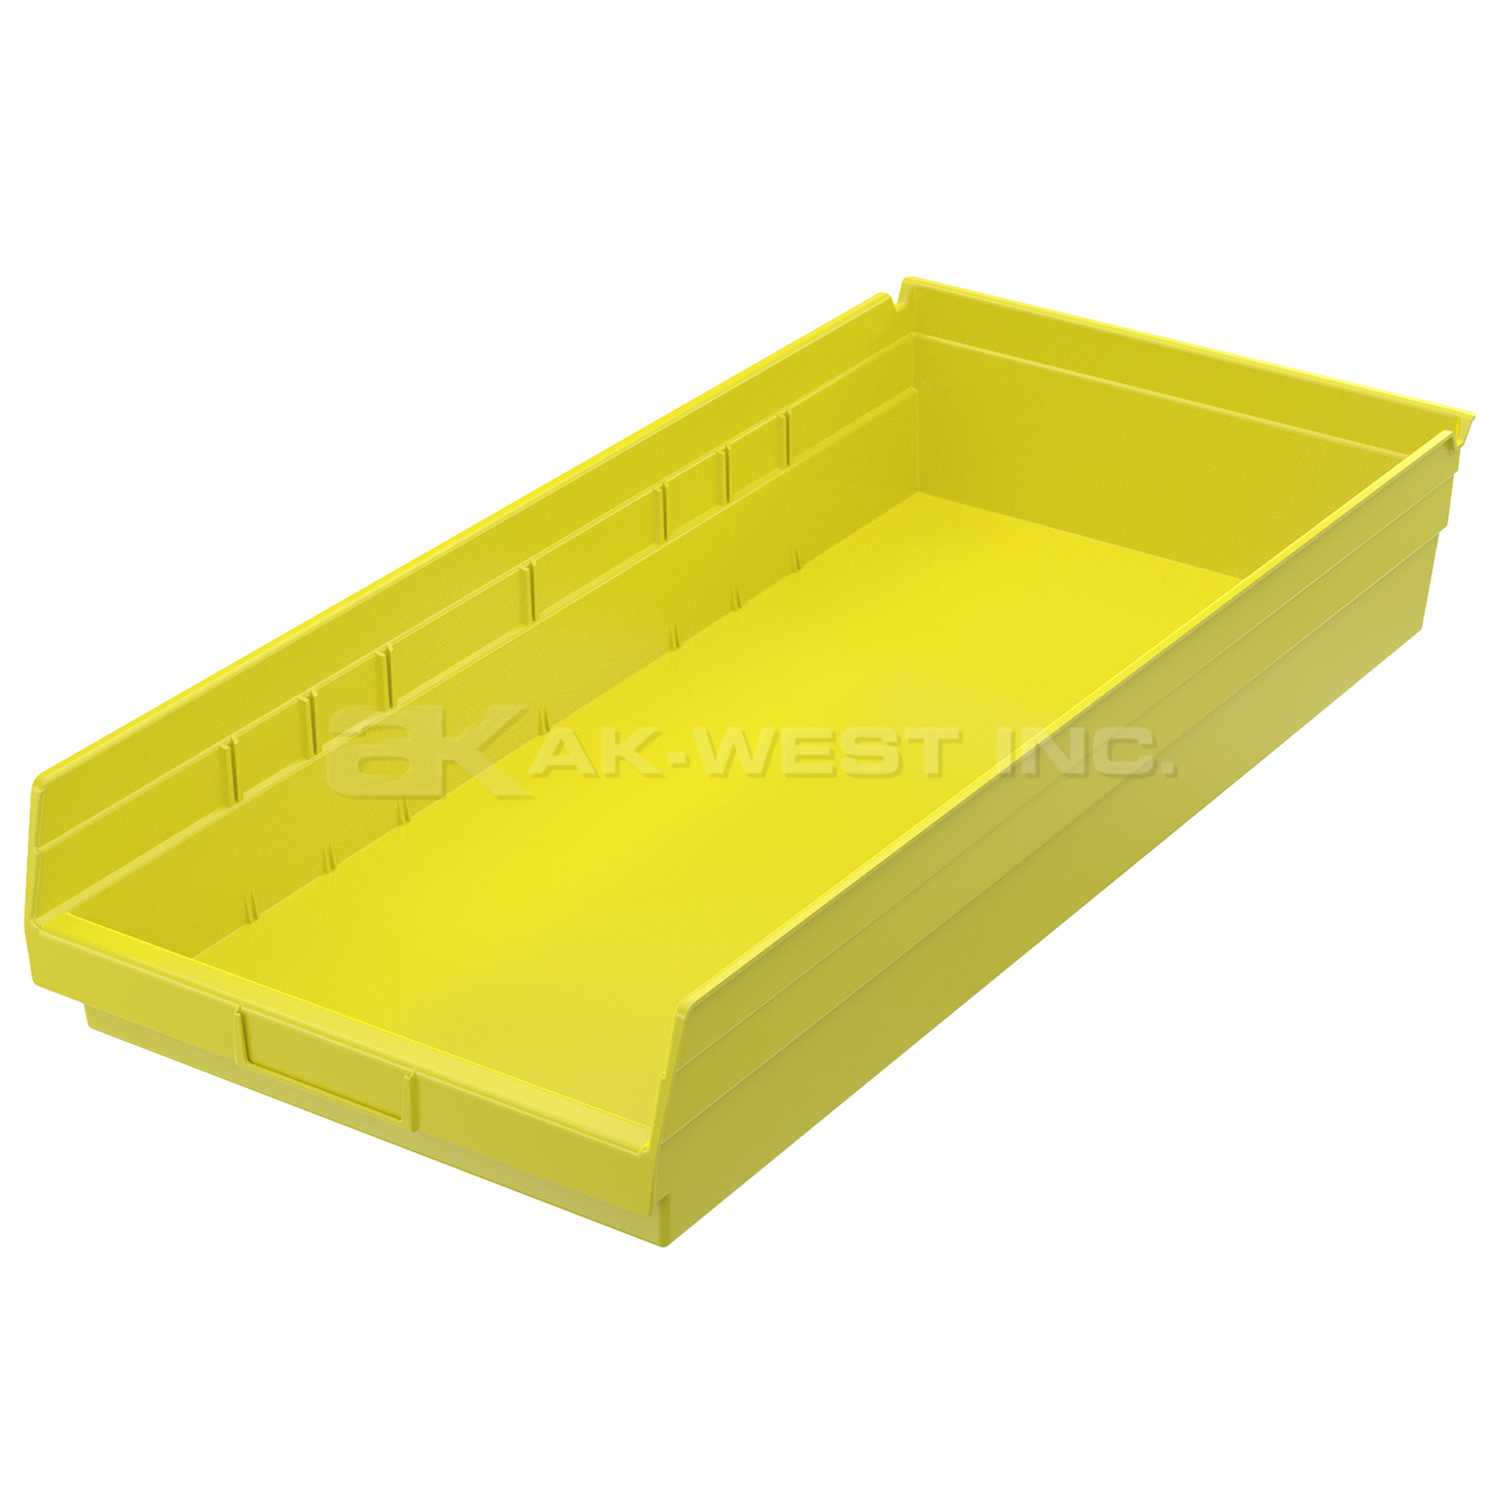 Yellow, 23-5/8" x 11-1/8" x 4" Shelf Bin (6 Per Carton)